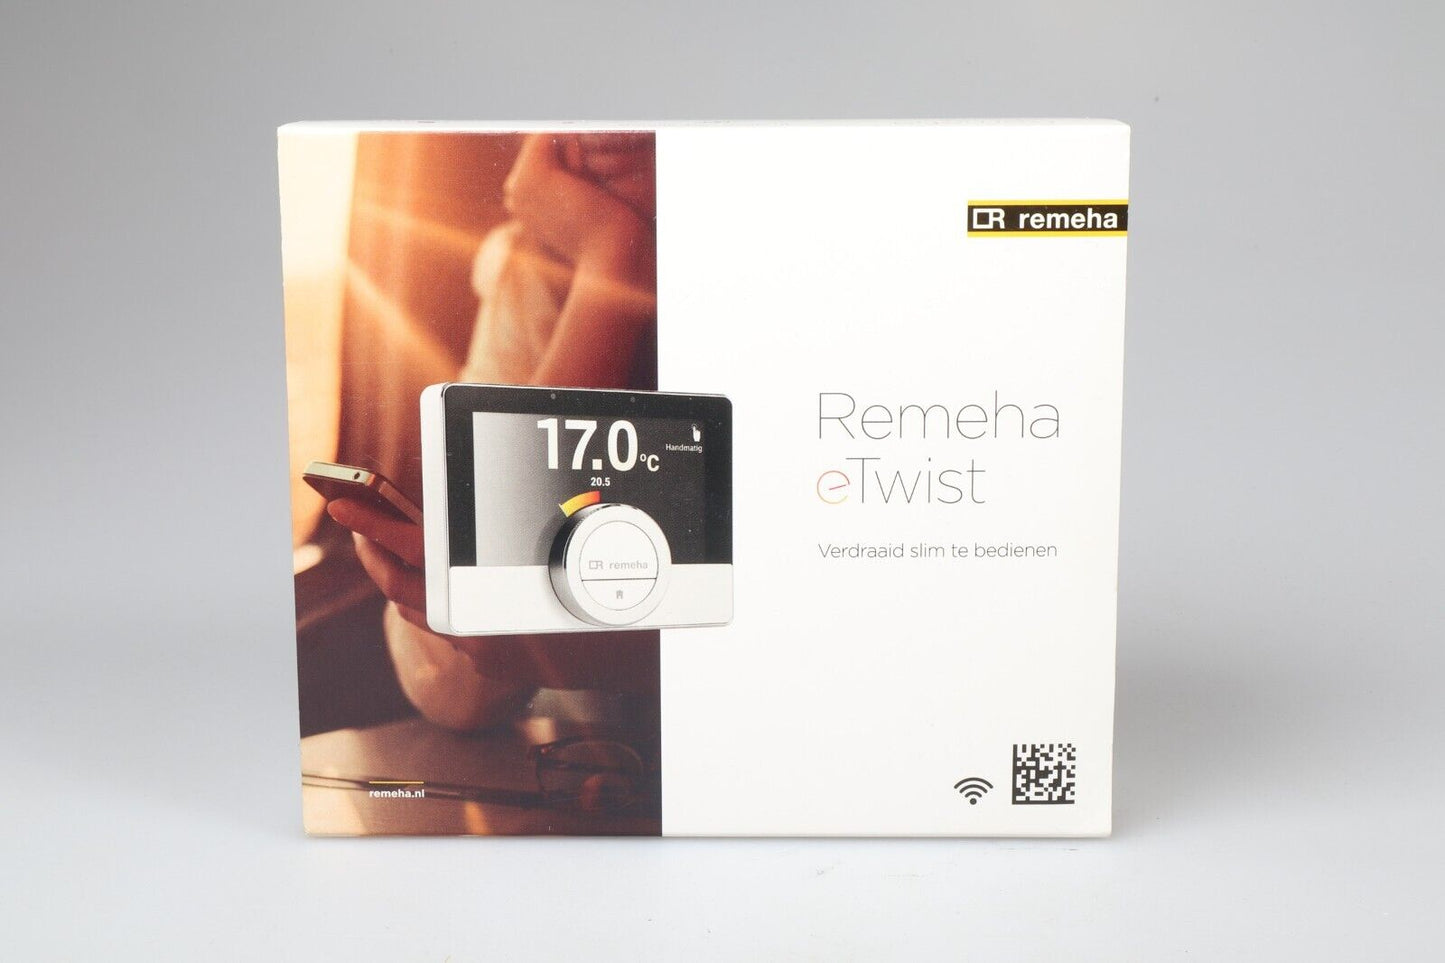 Remeha eTwist | Thermostat